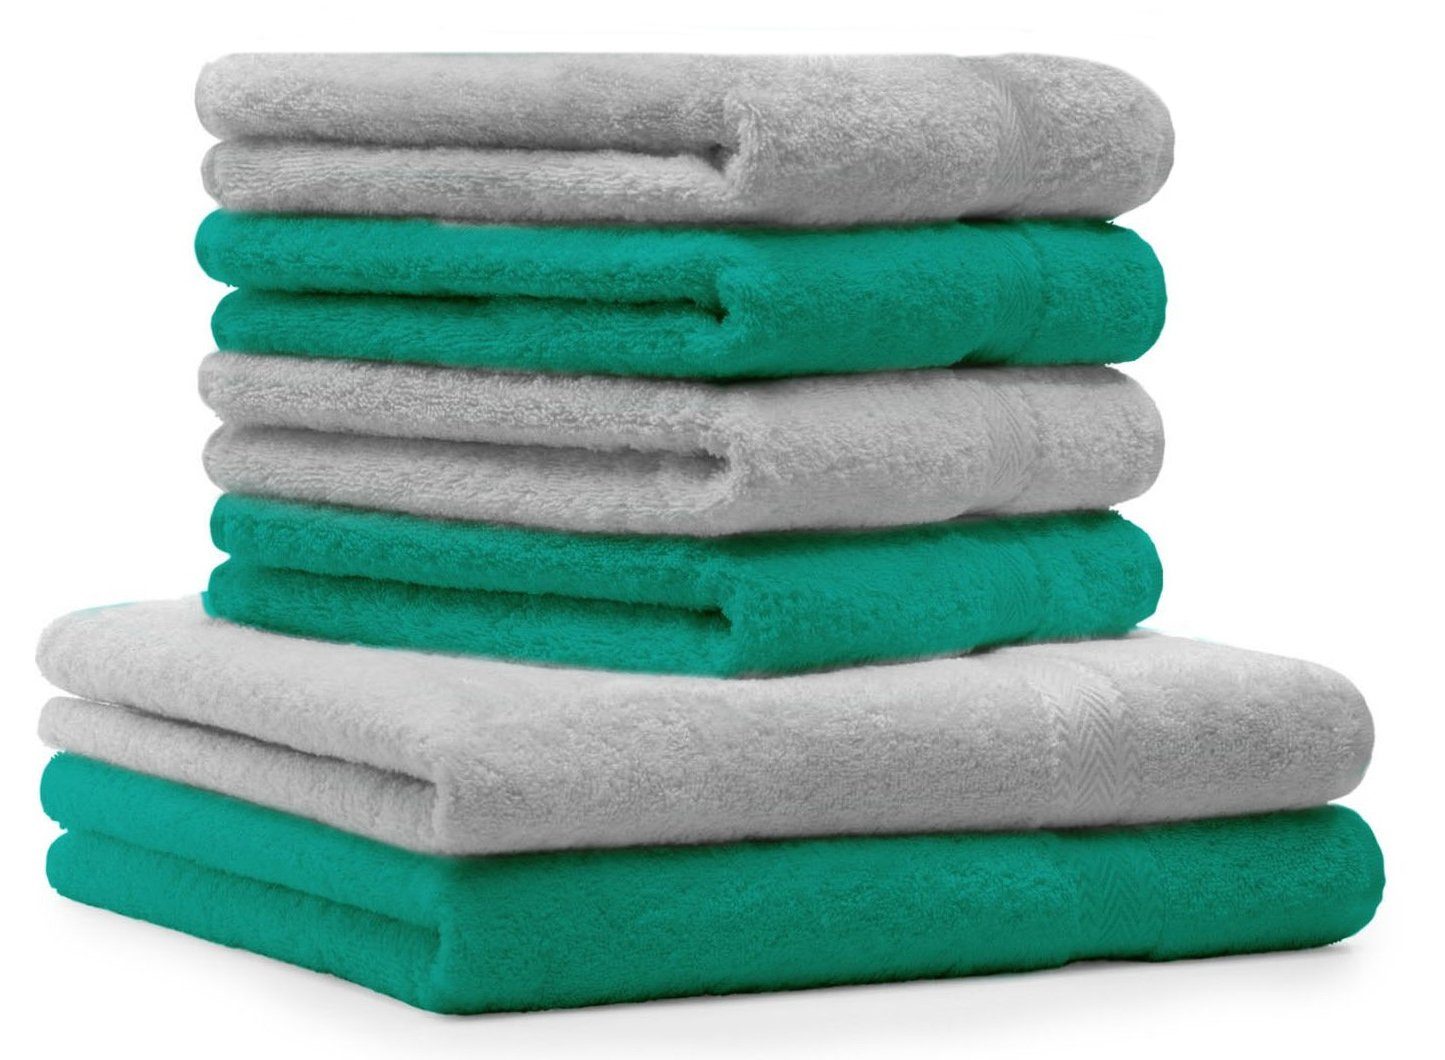 Betz Handtuch Set 6-TLG. Handtuch-Set Premium 100% Baumwolle 2 Duschtücher 4 Handtücher Farbe Silbergrau und smaragdgrün, 100% Baumwolle | Handtuch-Sets